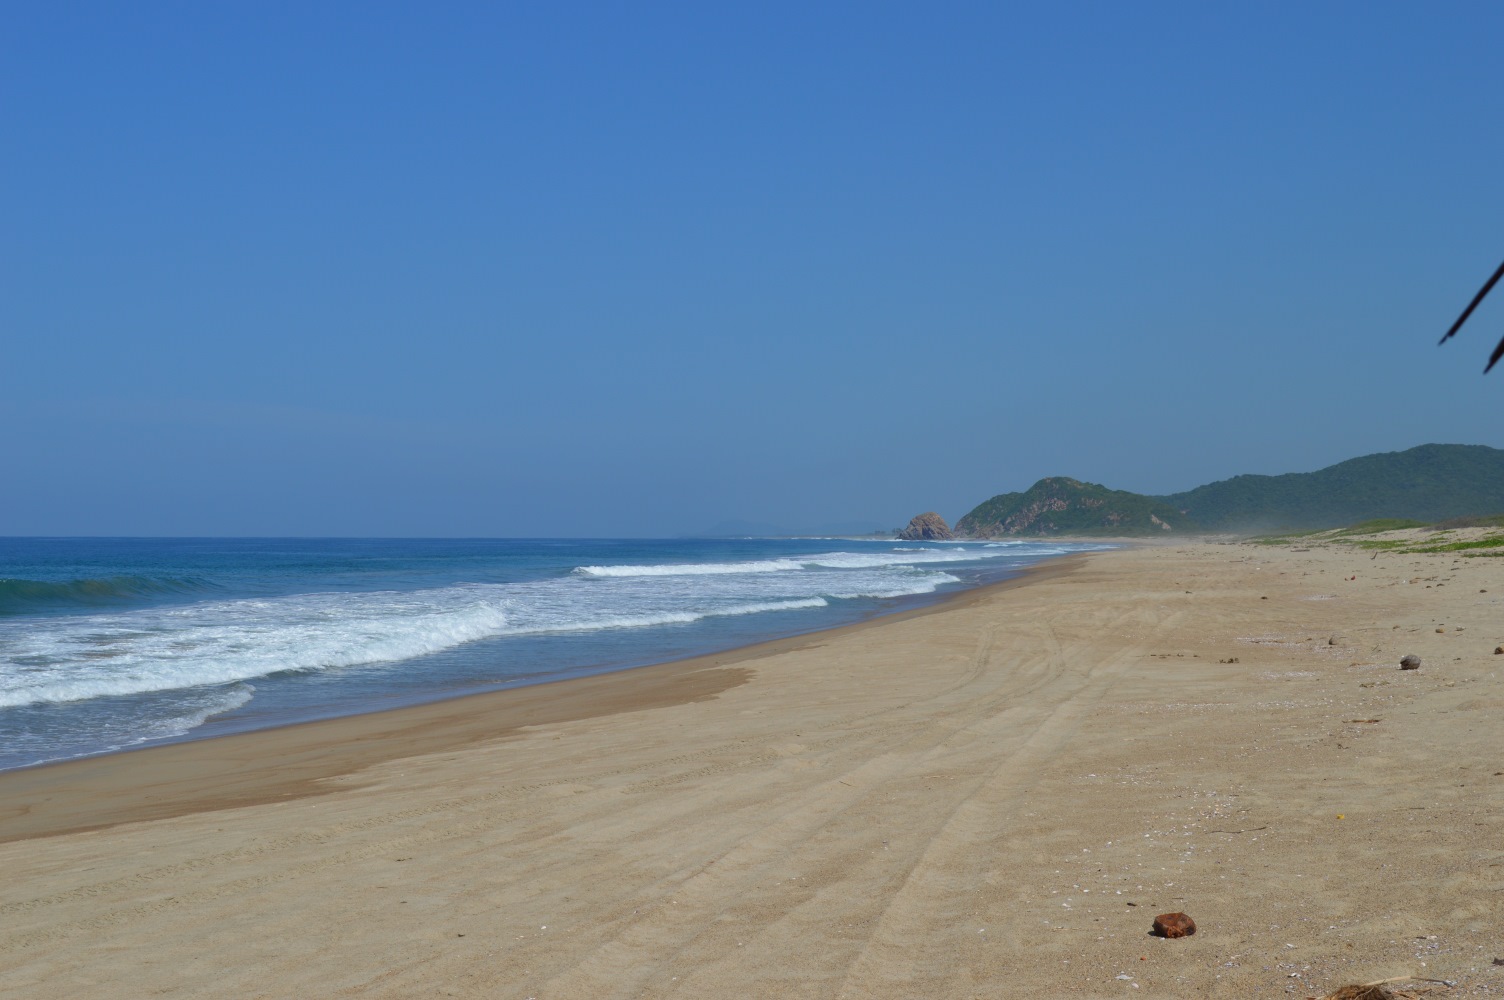 Playa el Coco'in fotoğrafı kahverengi kum yüzey ile